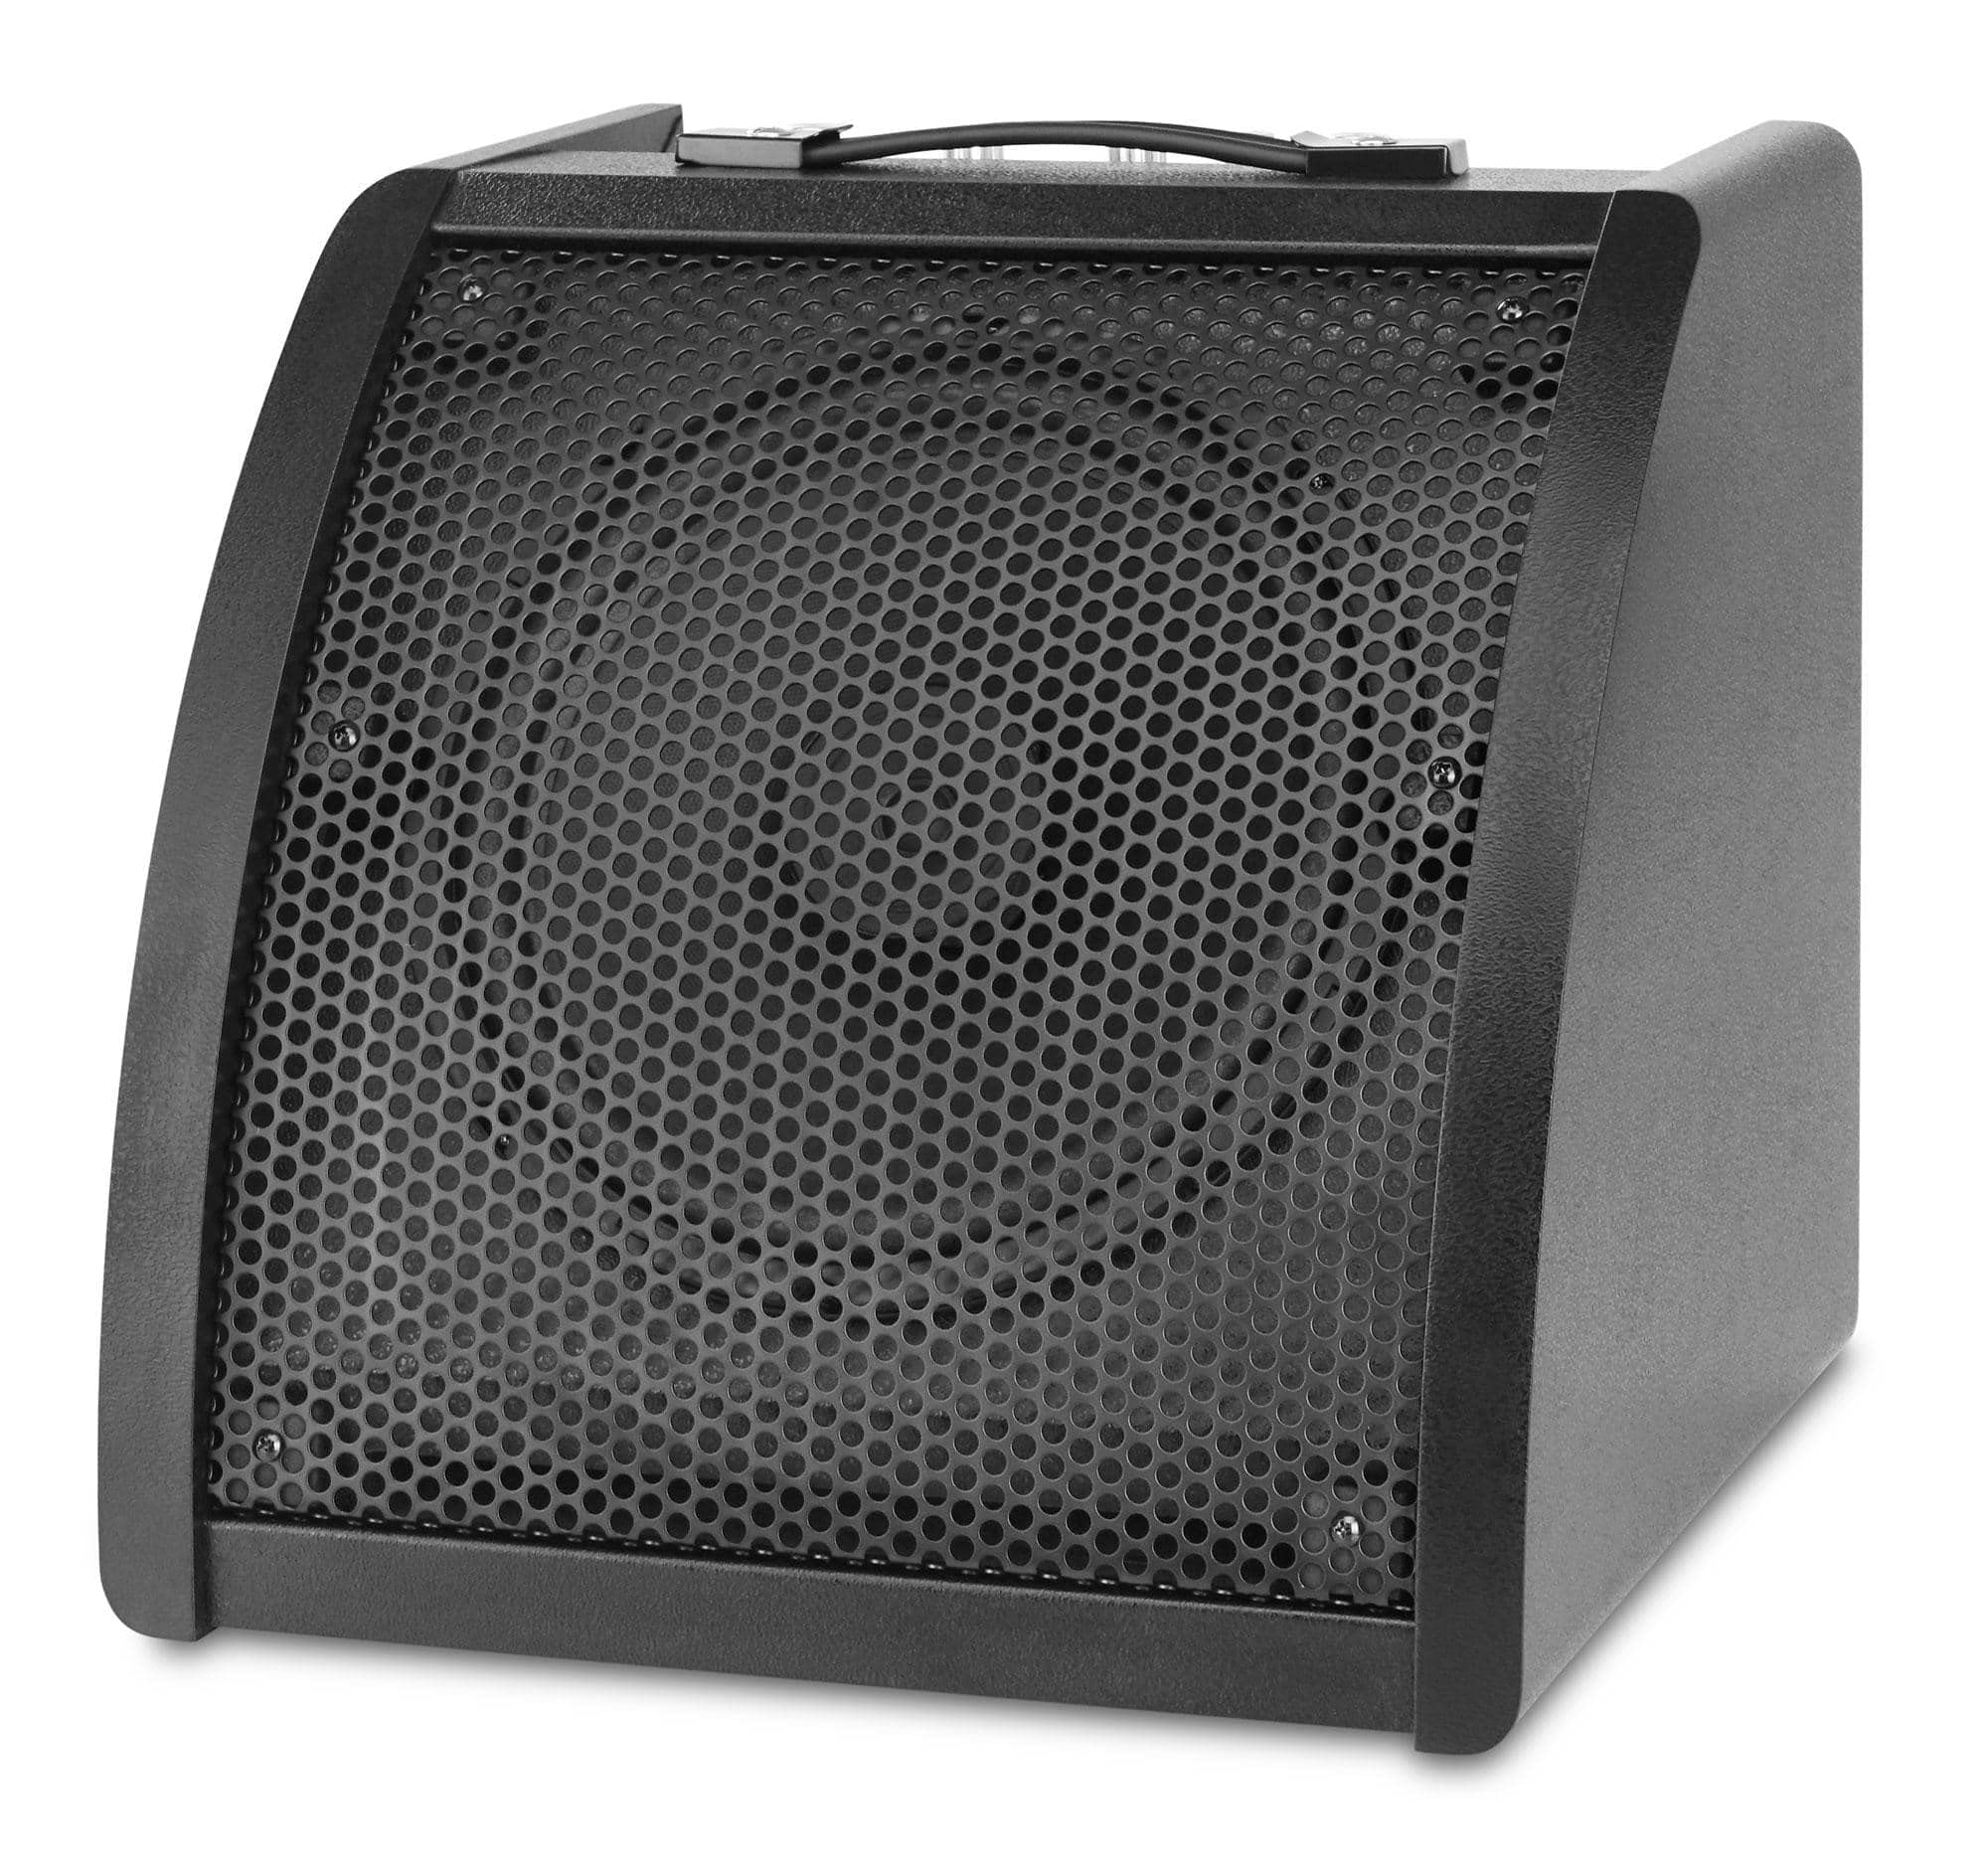 Classic Cantabile AP-30 Aktiv-Monitor - Drum Monitor mit 10'' Koaxial Speaker - Lautsprecher mit 30 Watt Leistung - 3-Band EQ, AUX-In - Ideal für E-Drum und Keyboards